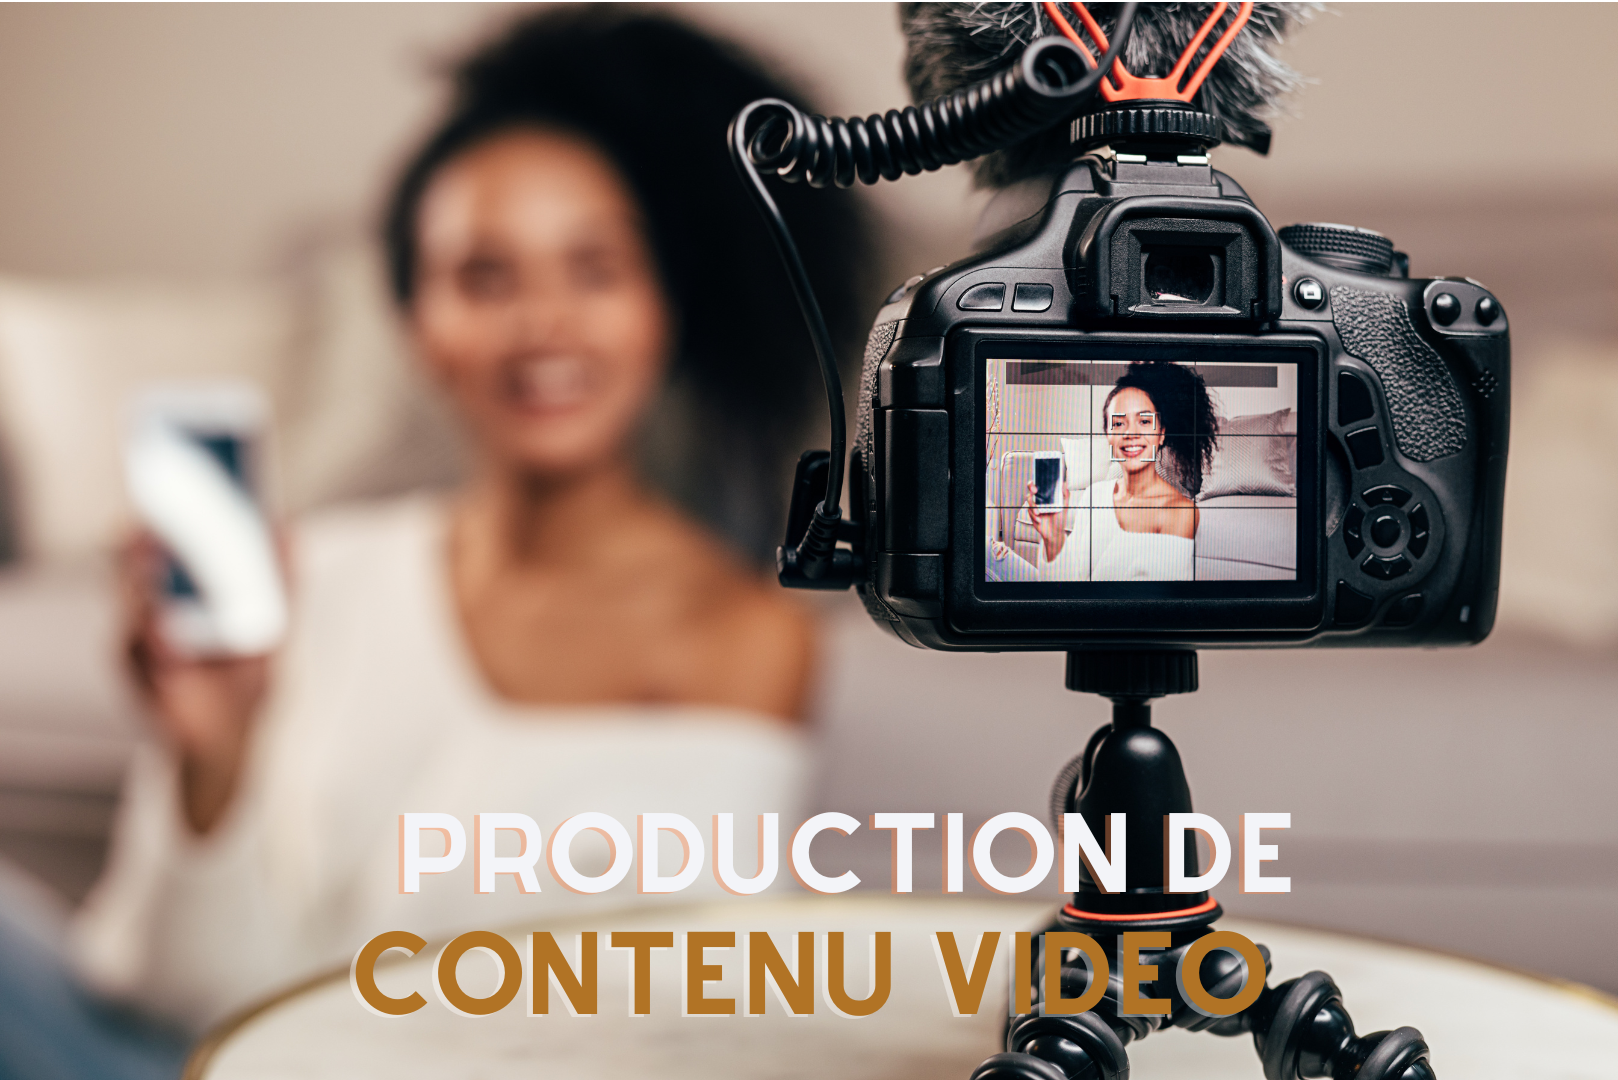 Production de contenu vidéos